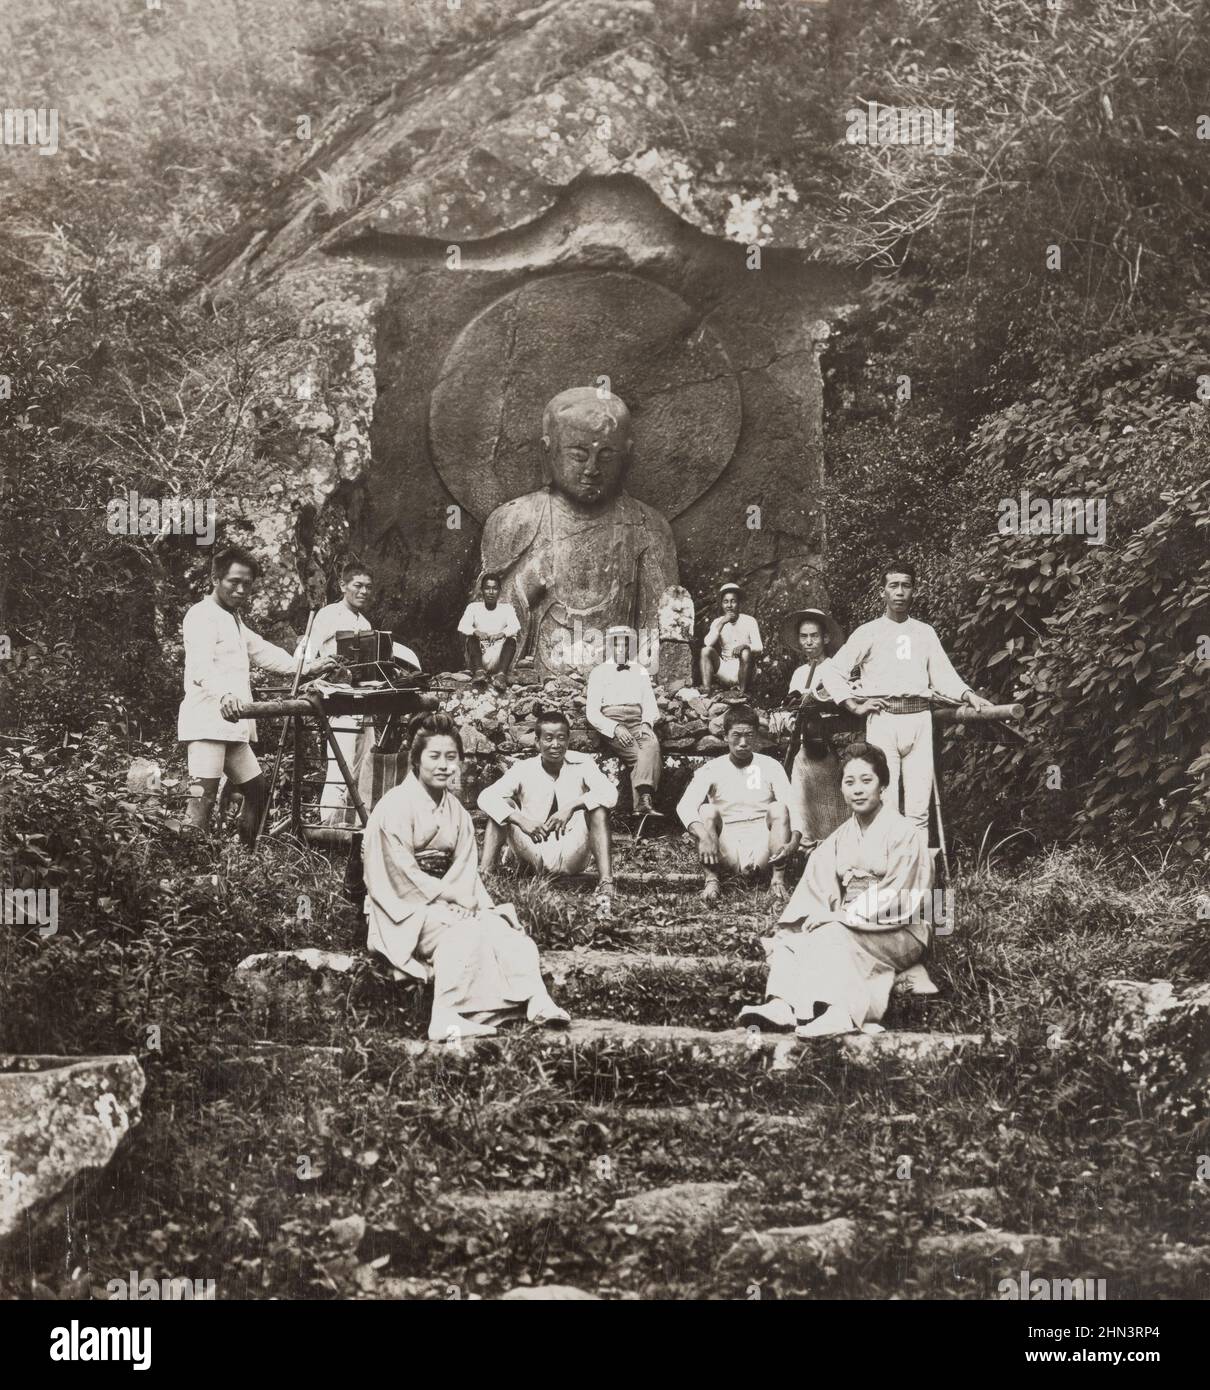 Das kolossal geschnitzte Relief von Jizo Bosatsu, dem buddhistischen Heiligen und schutzpatron der Reisenden in Japan. Ashinoyu, Japan. 1901 Stockfoto